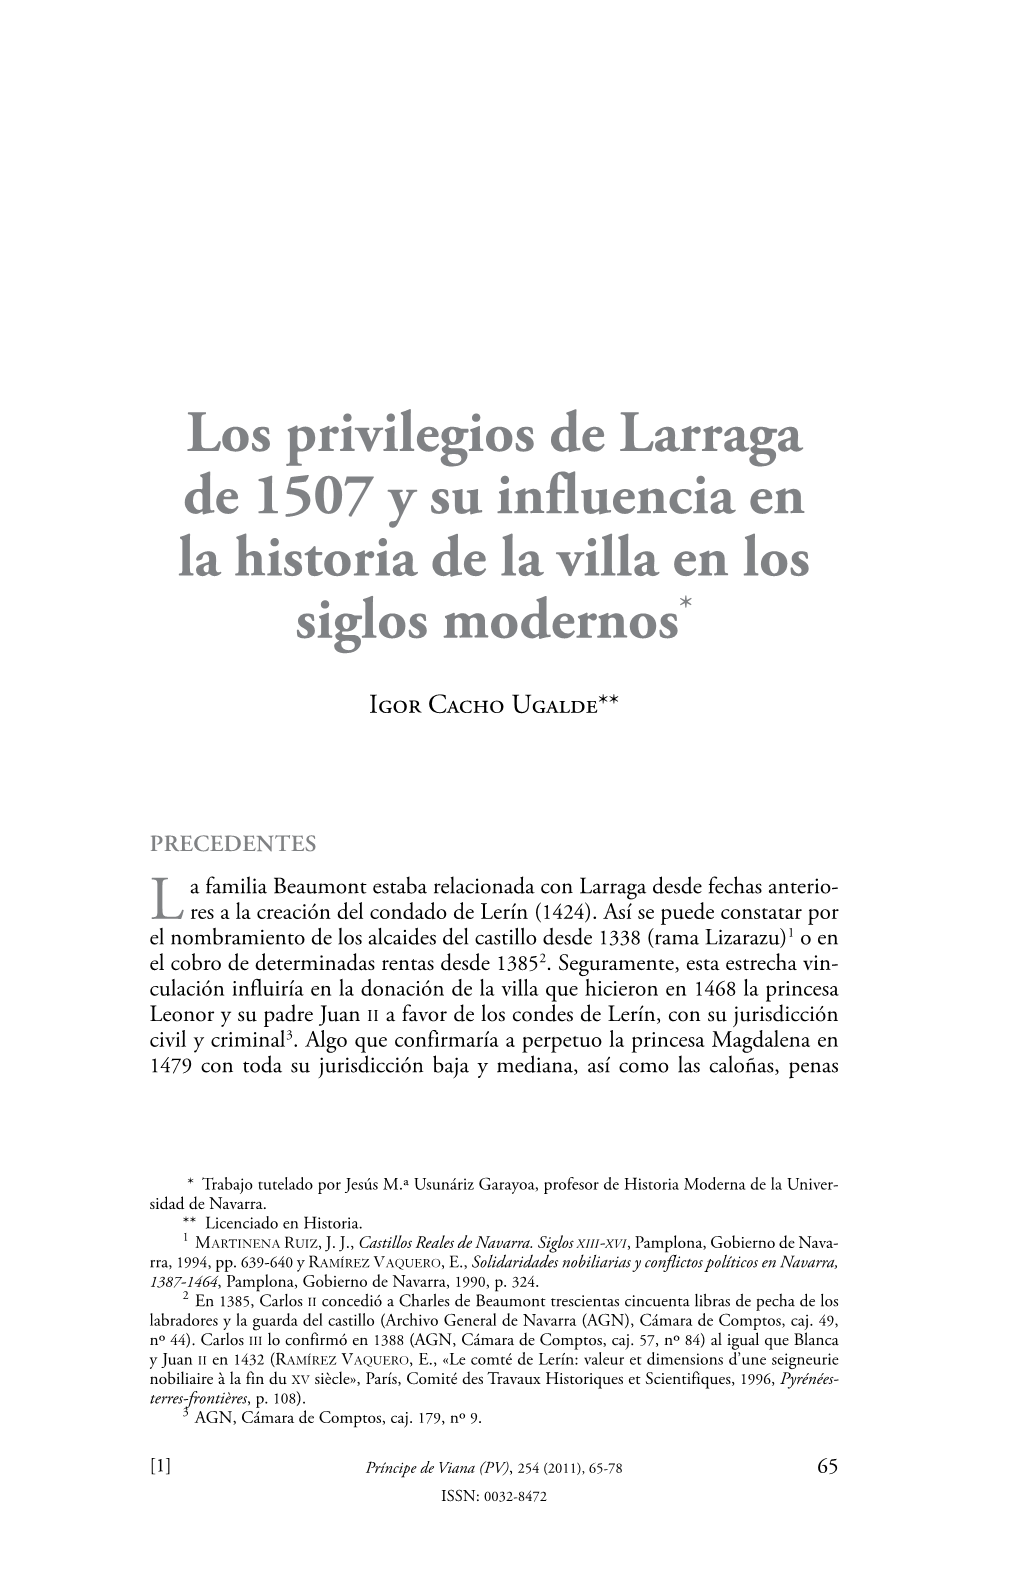 Los Privilegios De Larraga De 1507 Y Su Influencia En La Historia De La Villa En Los Siglos Modernos*